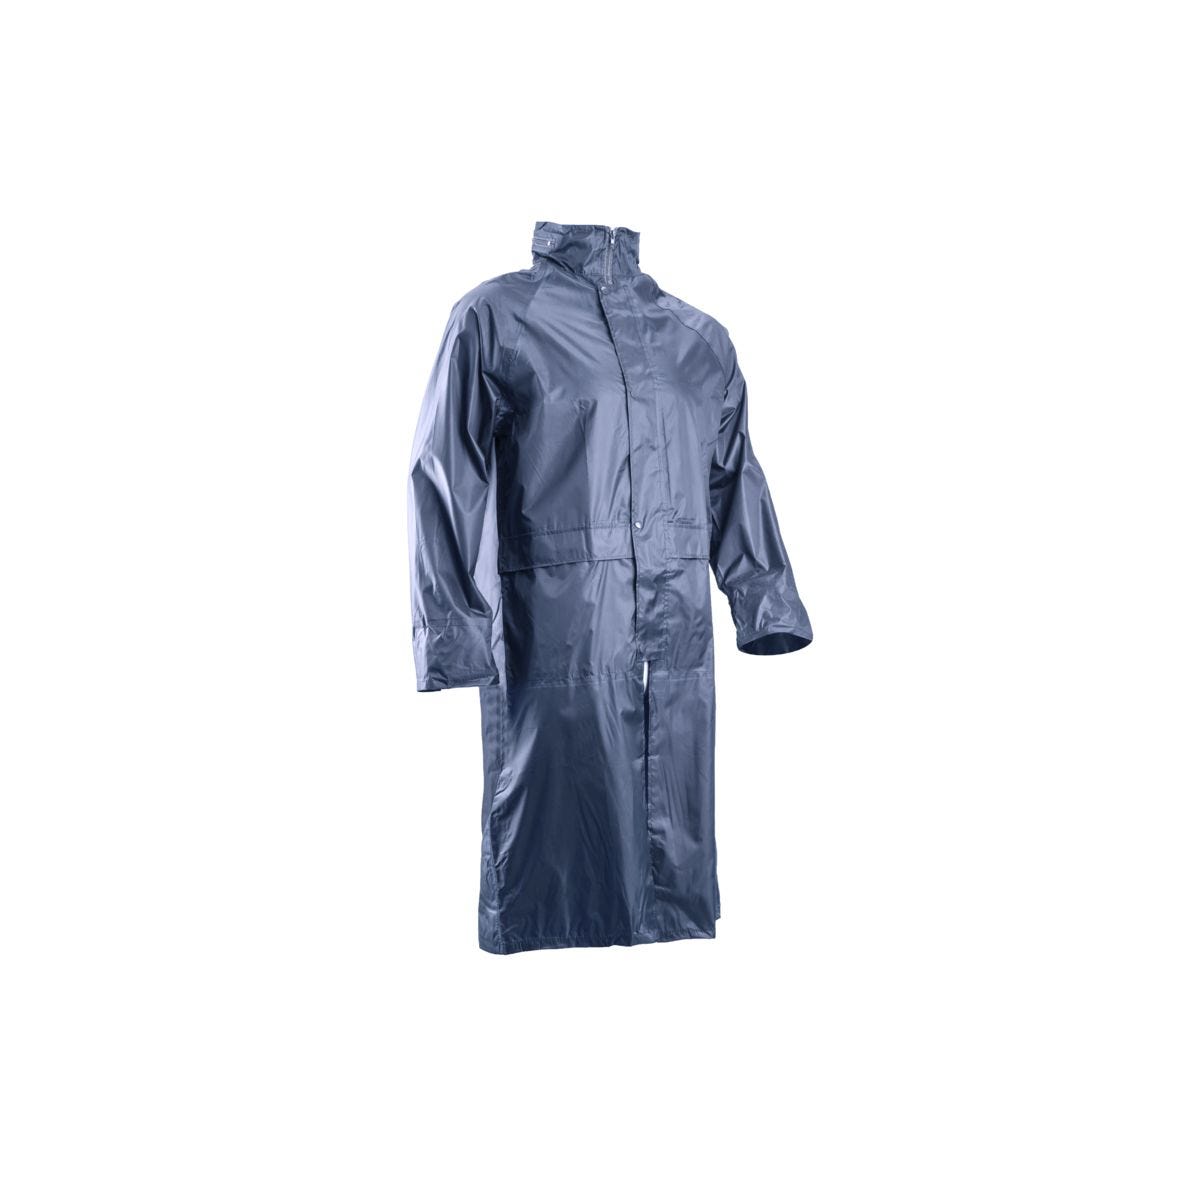 Manteau de pluie PVC, marine, 185g/m² - COVERGUARD - Taille 3XL 0